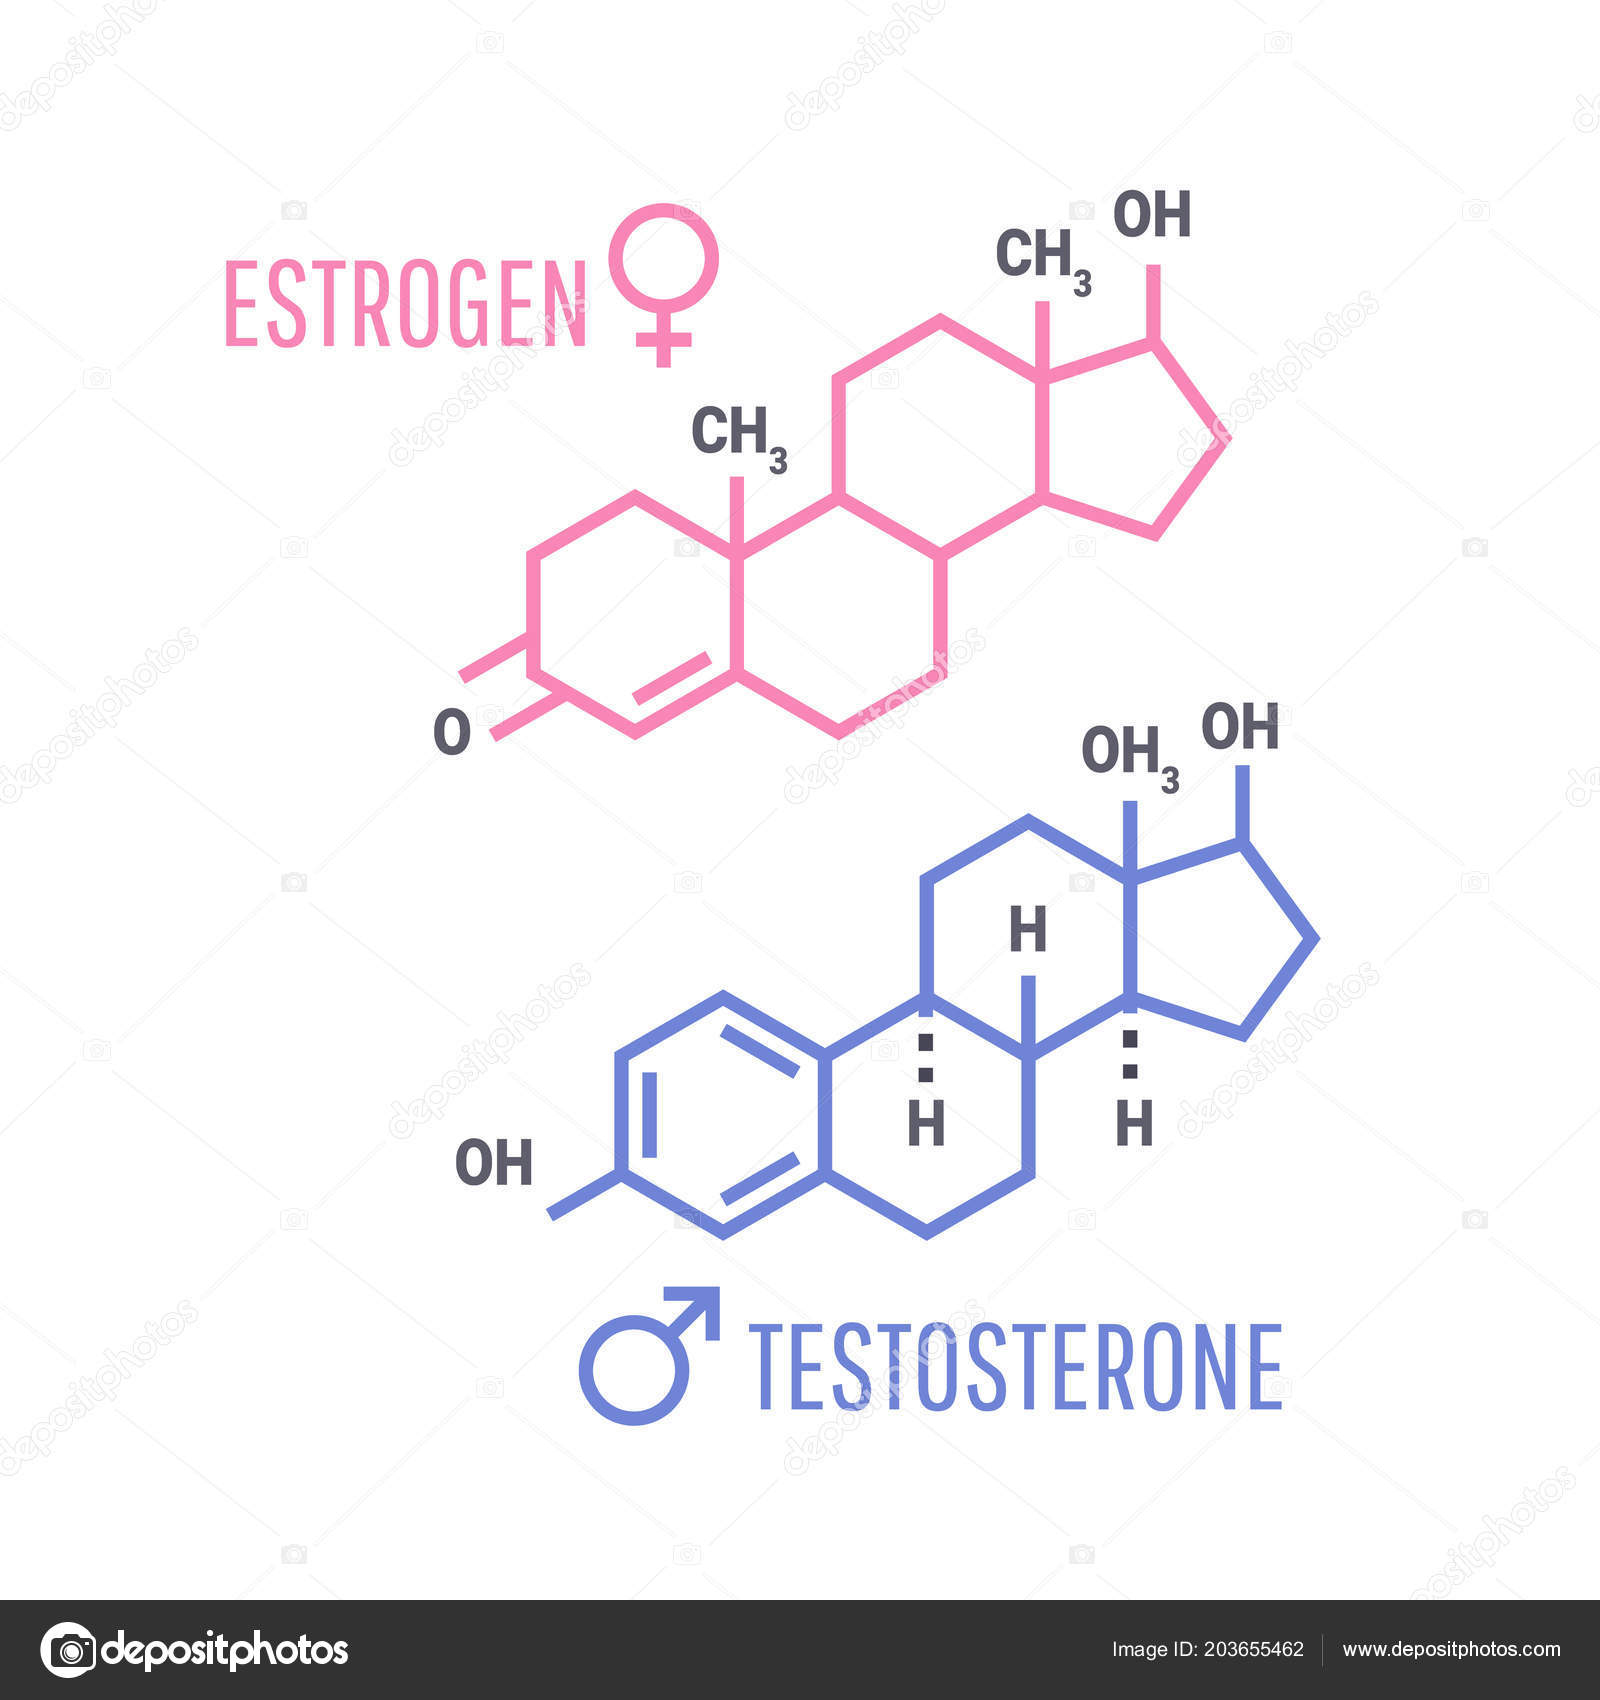 Estrogen i seks